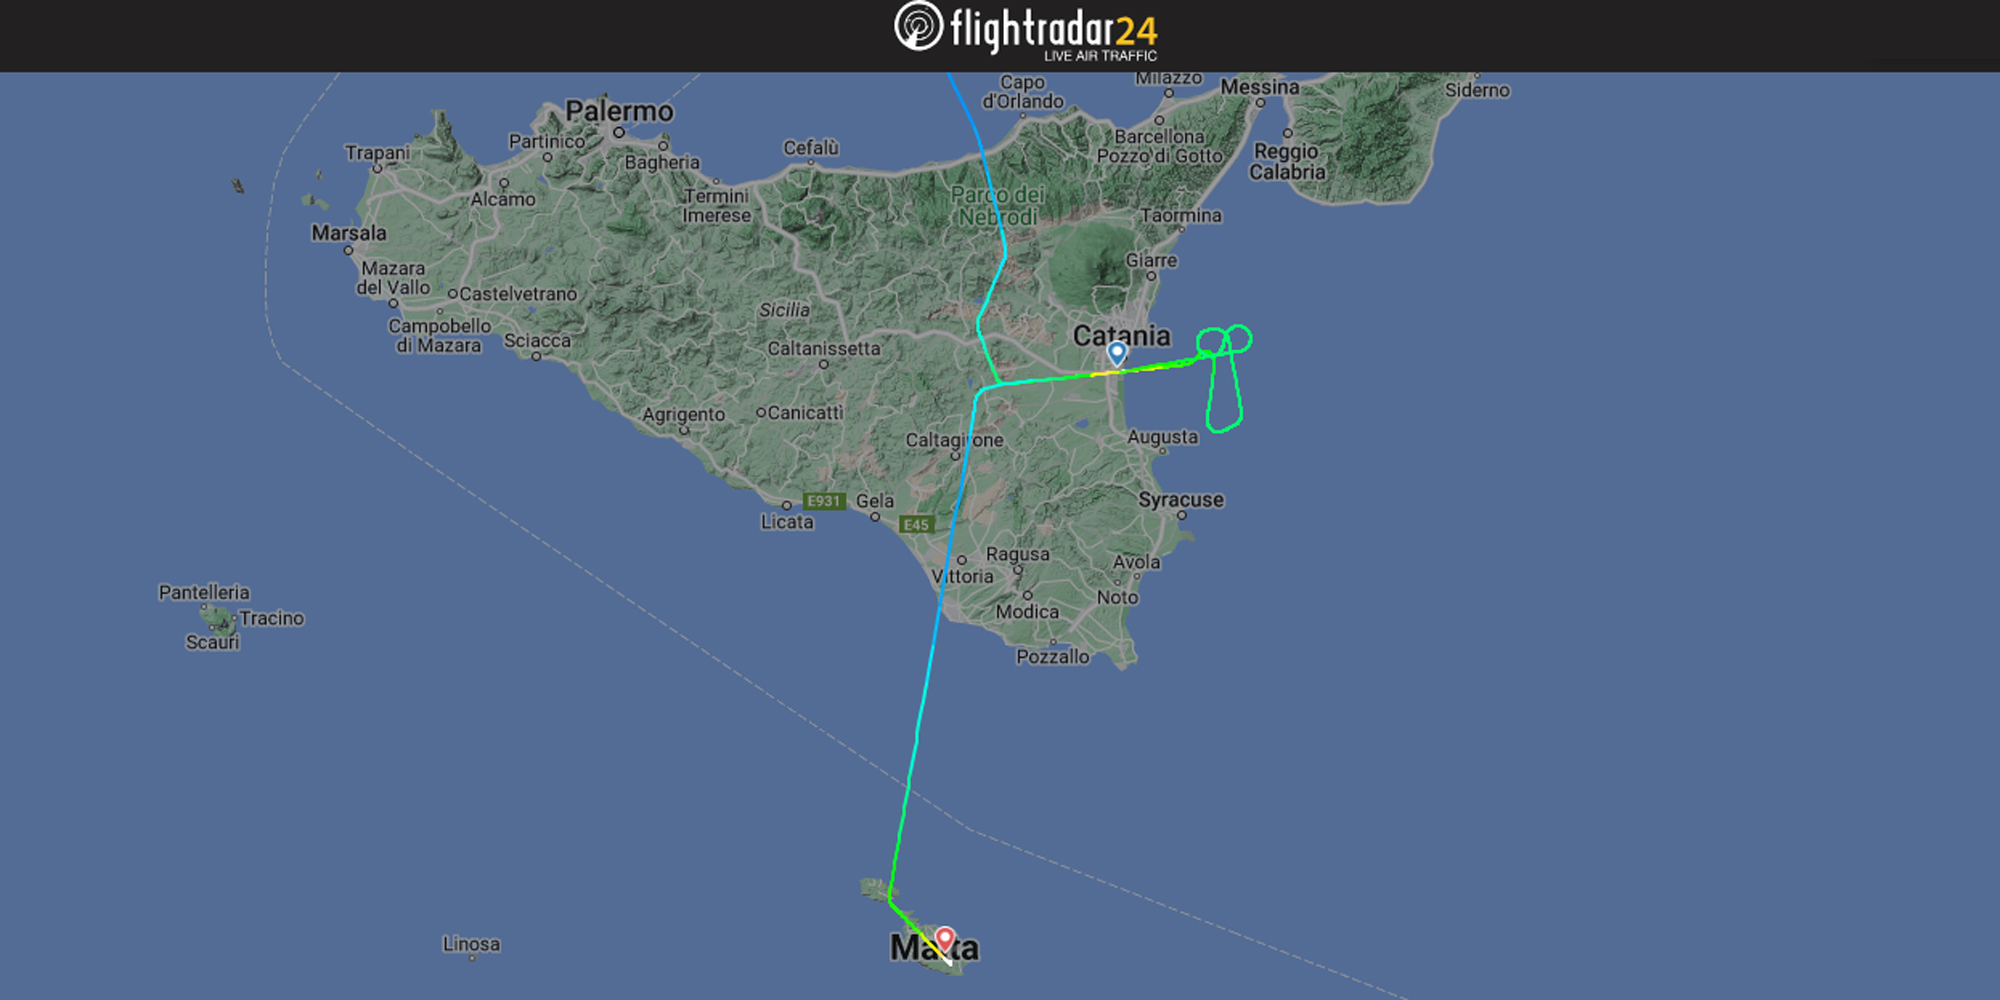 La forma fallica disegnata durante la deviazione verso Malta dal volo LH306 - @Flightradar24